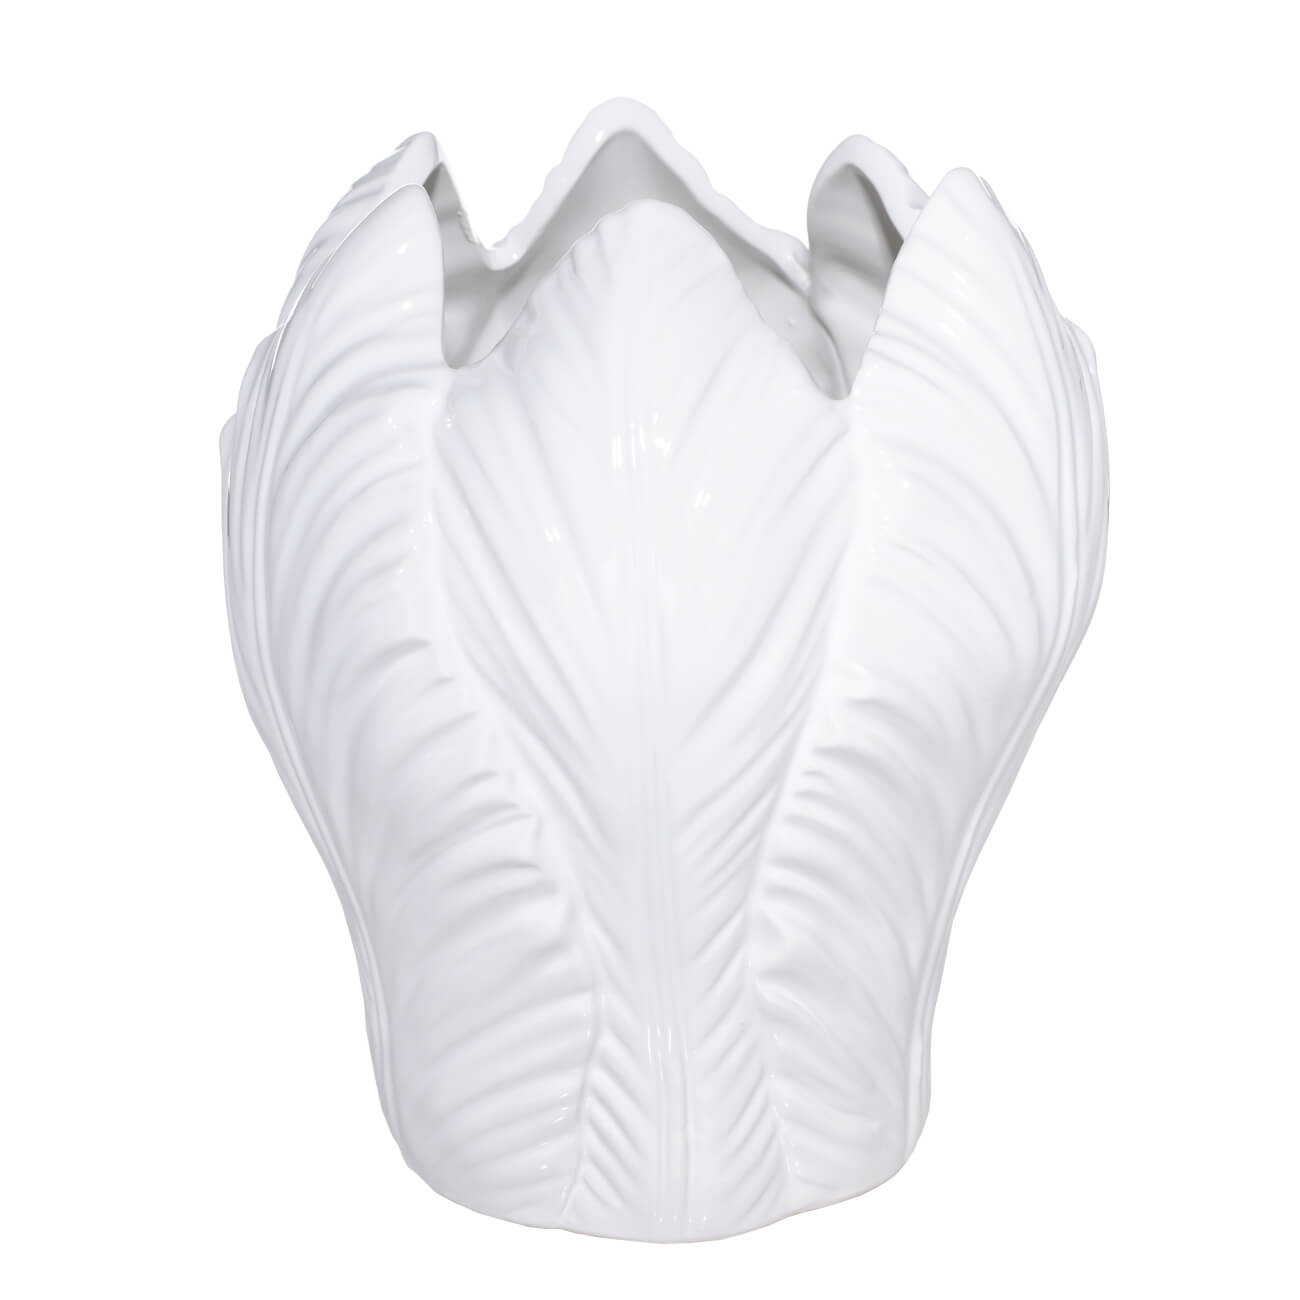 Ваза для цветов, 21 см, керамика, белая, Тюльпан, Tulip kuchenland ваза для цветов 26 см декоративная керамика белая лицо face